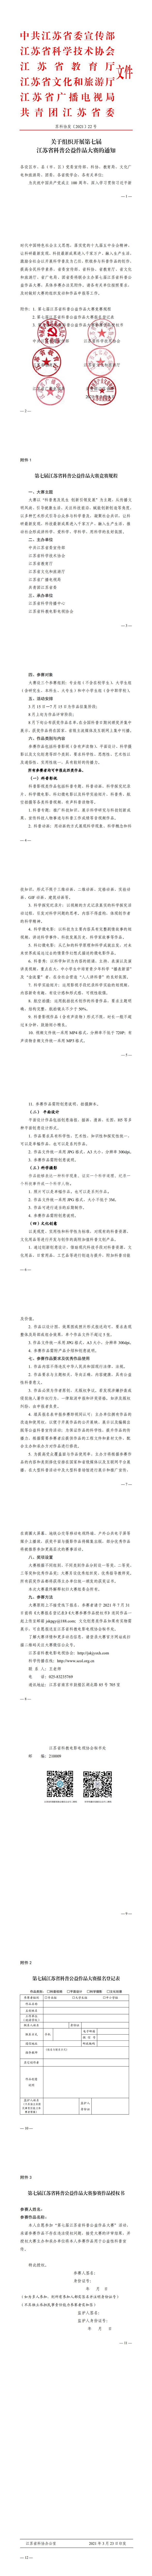 关于组织开展第七届江苏省科普公益作品大赛的通知(2)(5)_0.jpg